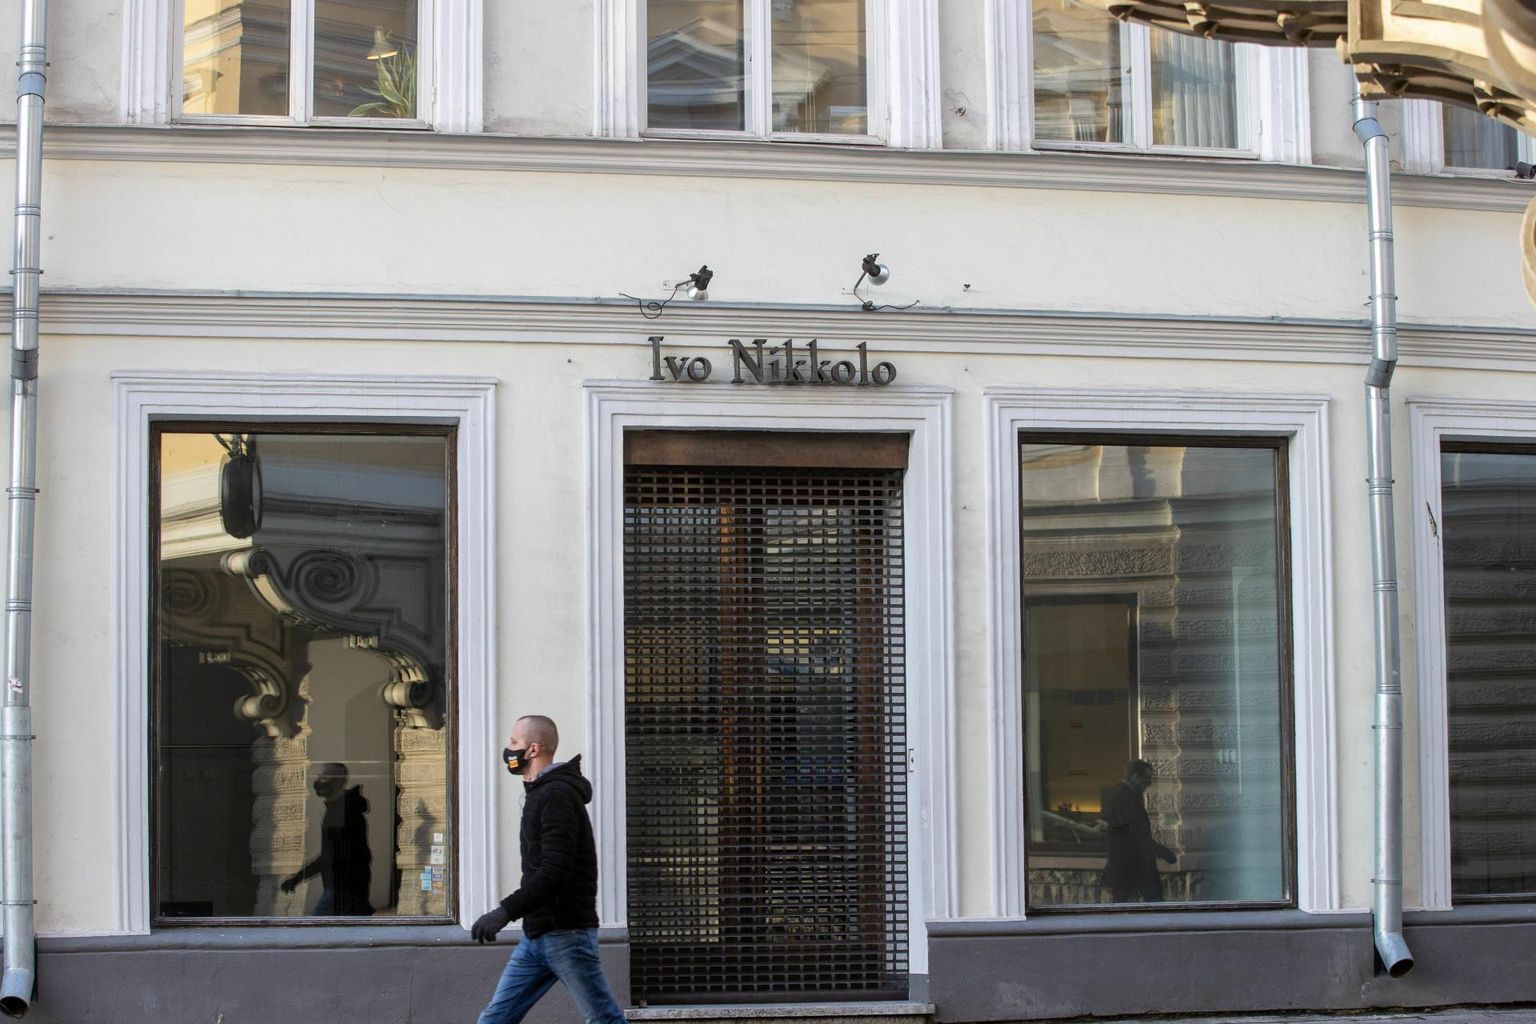 Kaubamärk jäi, aga esinduspood suleti. 2020. aasta sügisel sulges Baltika Ivo Nikkolo esinduspoe. Nikkolo jäi rõivamüüja ainsaks kaubamärgiks. 